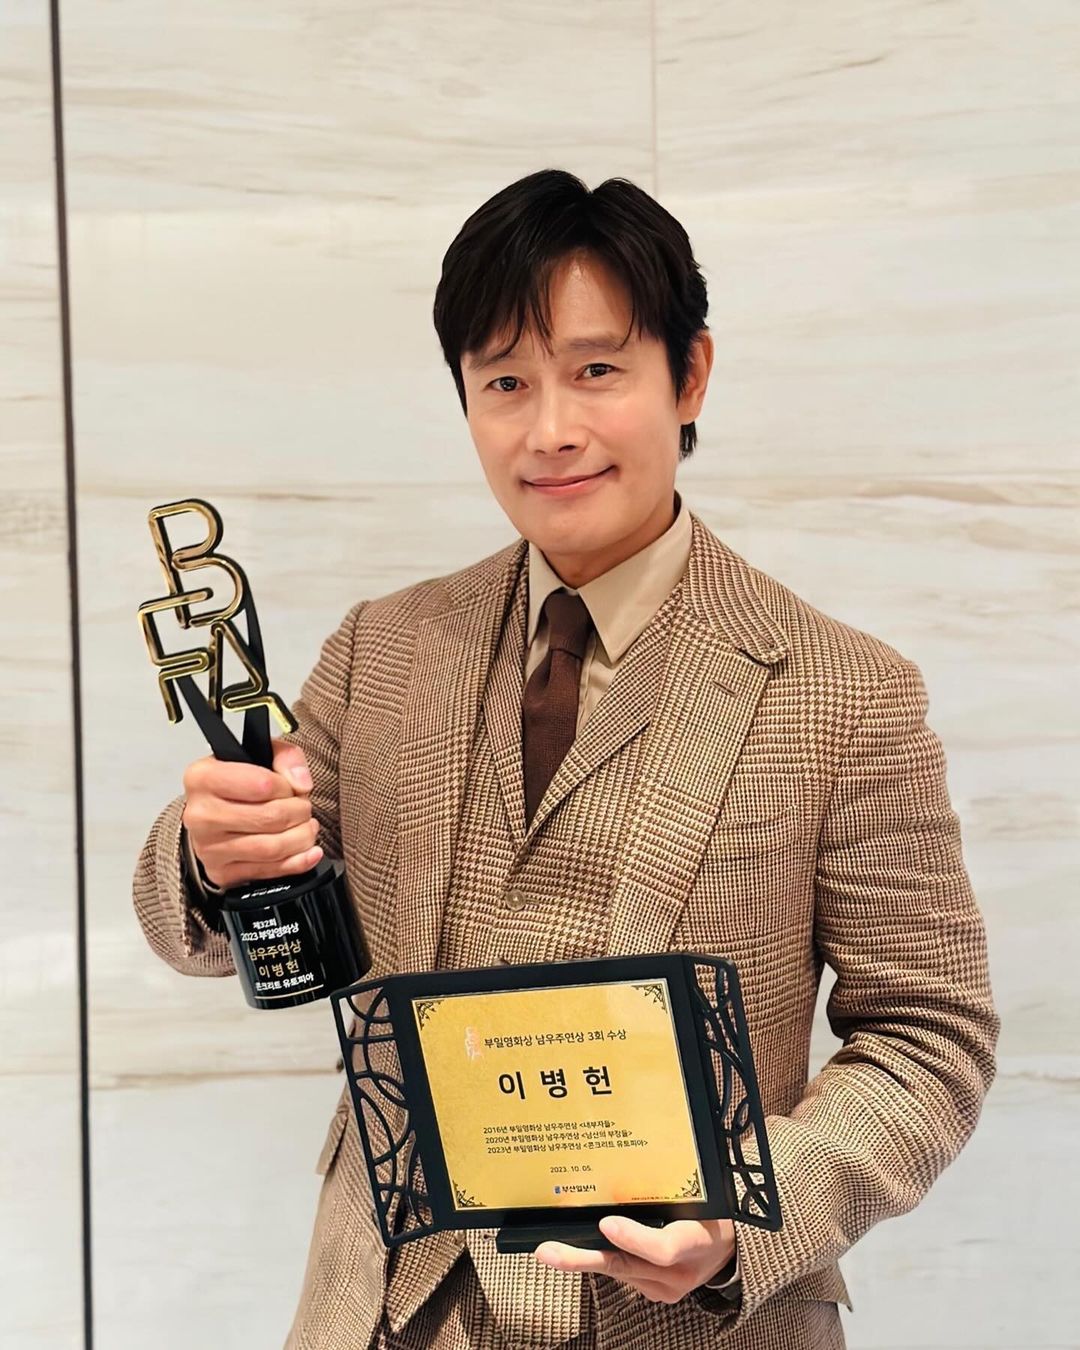 イ・ビョンホンは、『第32回釜日映画賞』で主演男優賞に輝いた